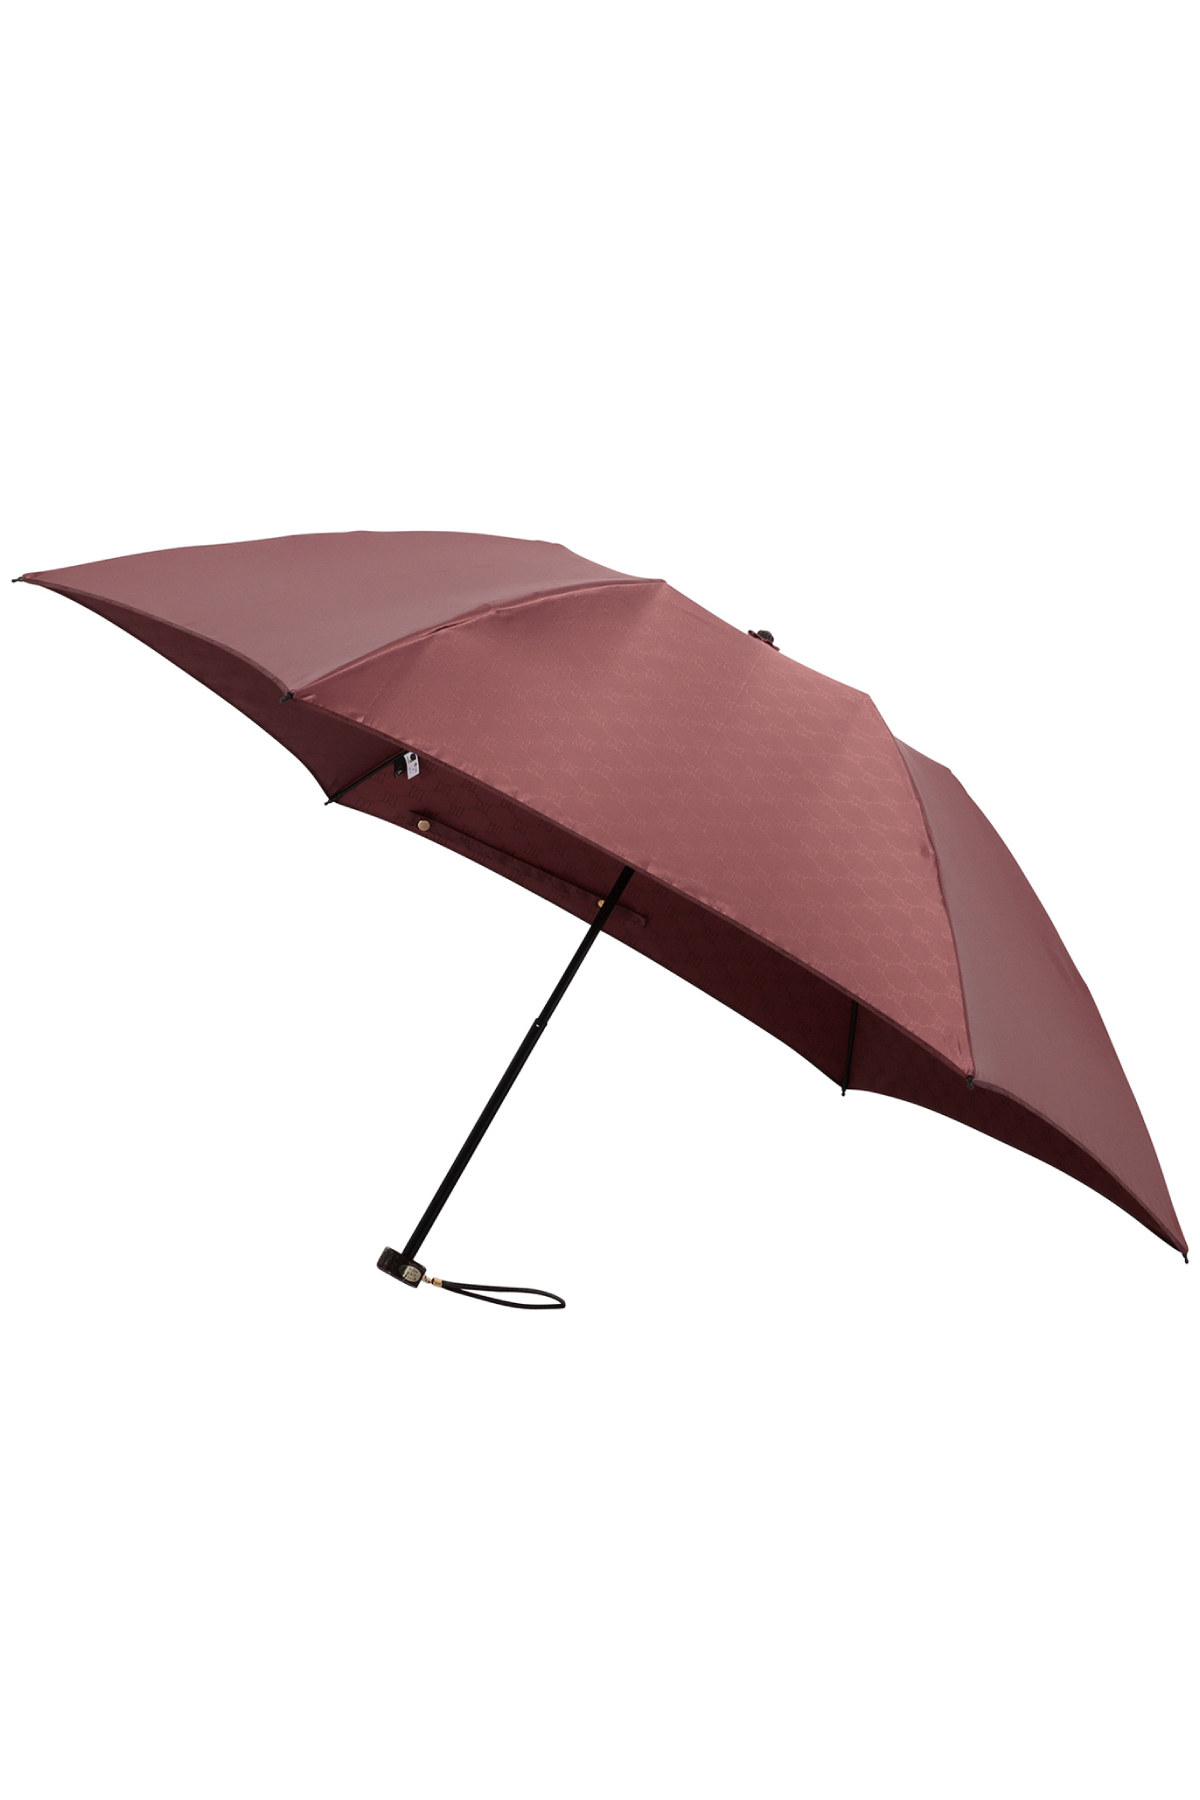 【雨傘】ミニ折りたたみ傘両面カチオン裏ロゴ 詳細画像 3